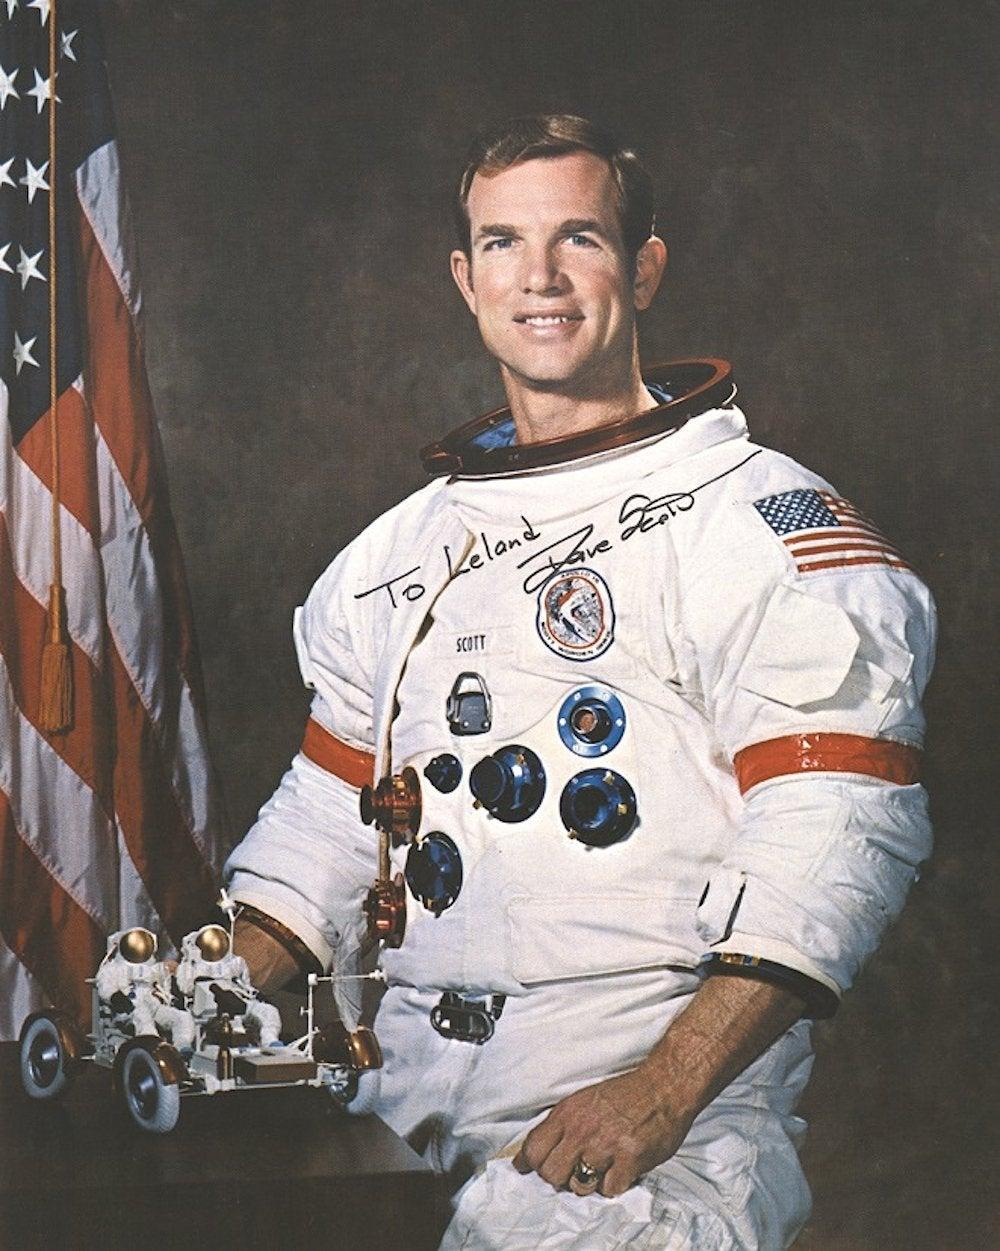 Ein signiertes Foto des Apollo-15-Astronauten Dave Scott, dem siebten Mann auf dem Mond

David Scott (1932 -) ist ein amerikanischer Flieger und NASA-Astronaut, der im Juli 1971 während der Apollo 15-Mission als siebter Mensch den Mond